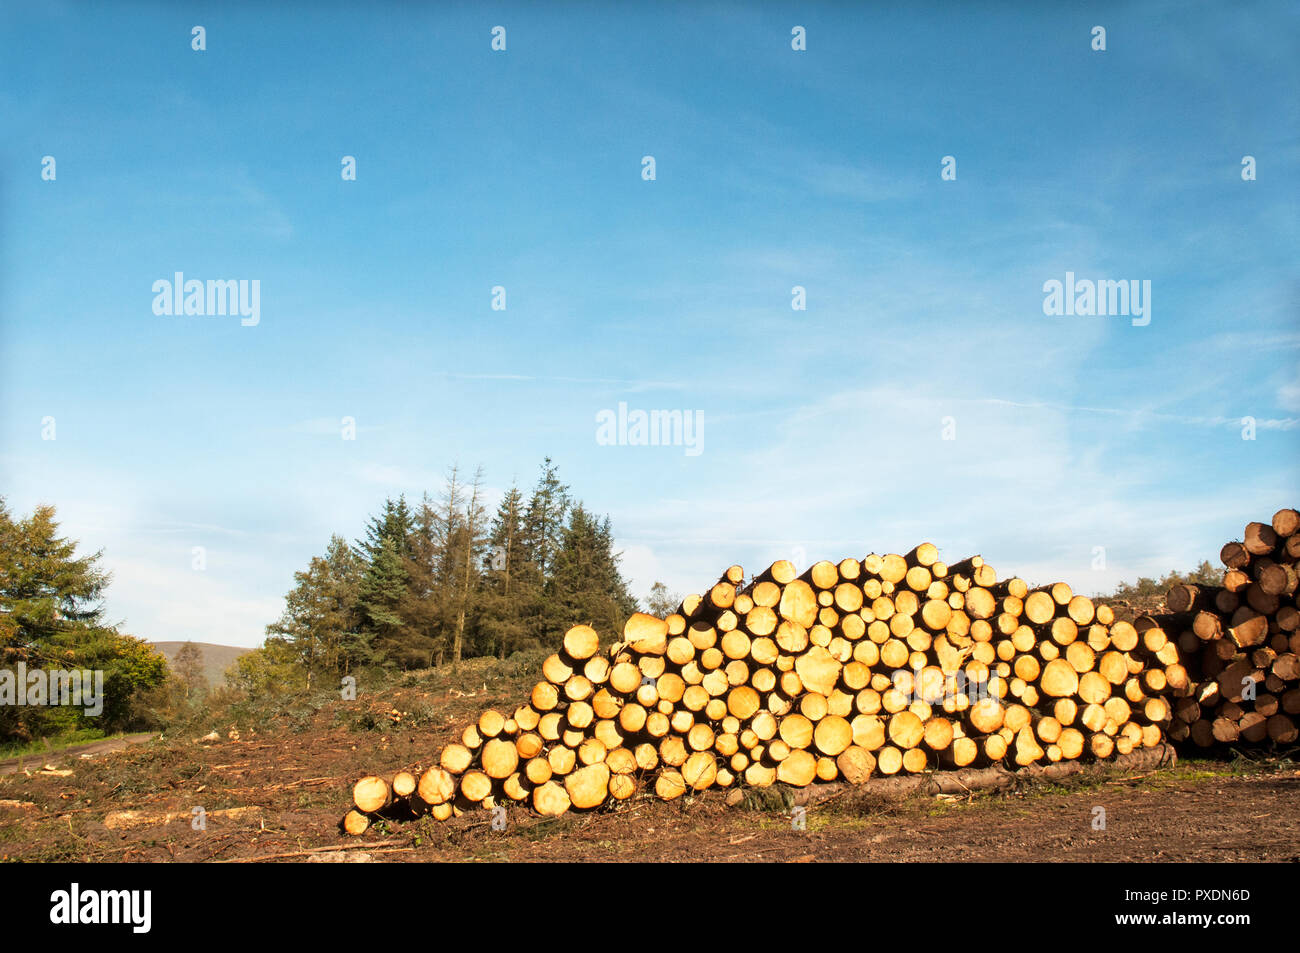 Les piles de troncs d'arbres coupés après avoir été abattu en raison de étant dangereuses après beaucoup de grands vents. Seront recyclés dans d'autres projets dans le parc. Banque D'Images